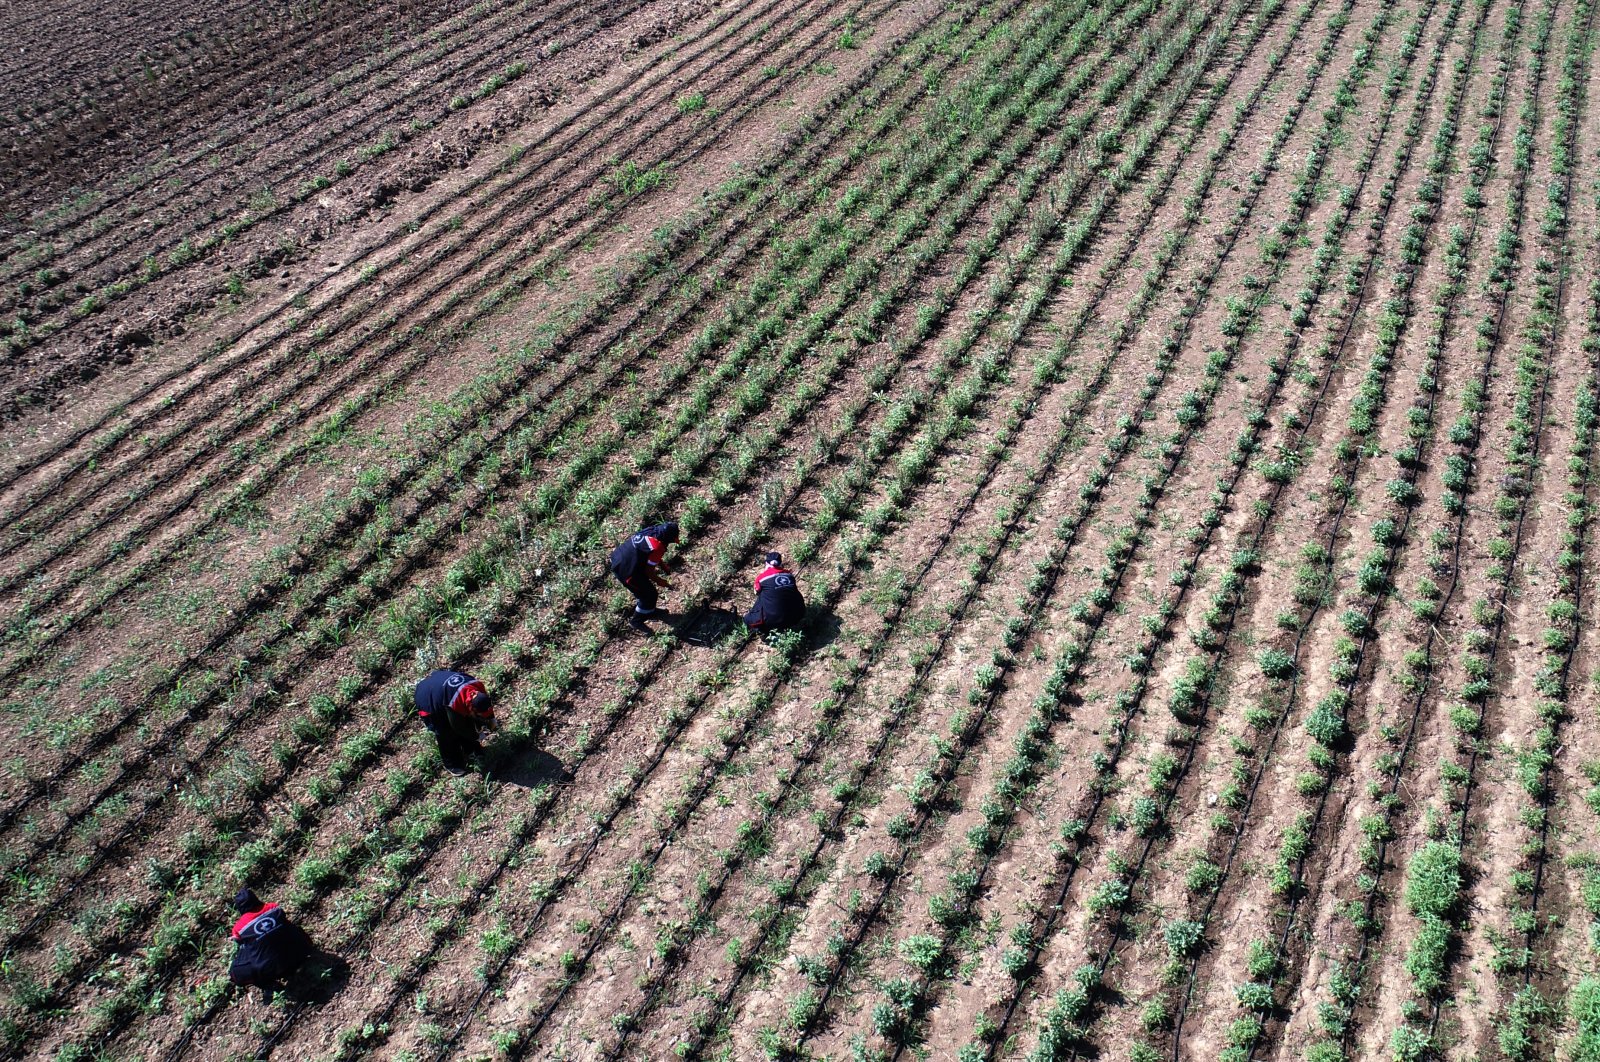 Turki menetapkan peta jalan untuk pertanian ramah iklim